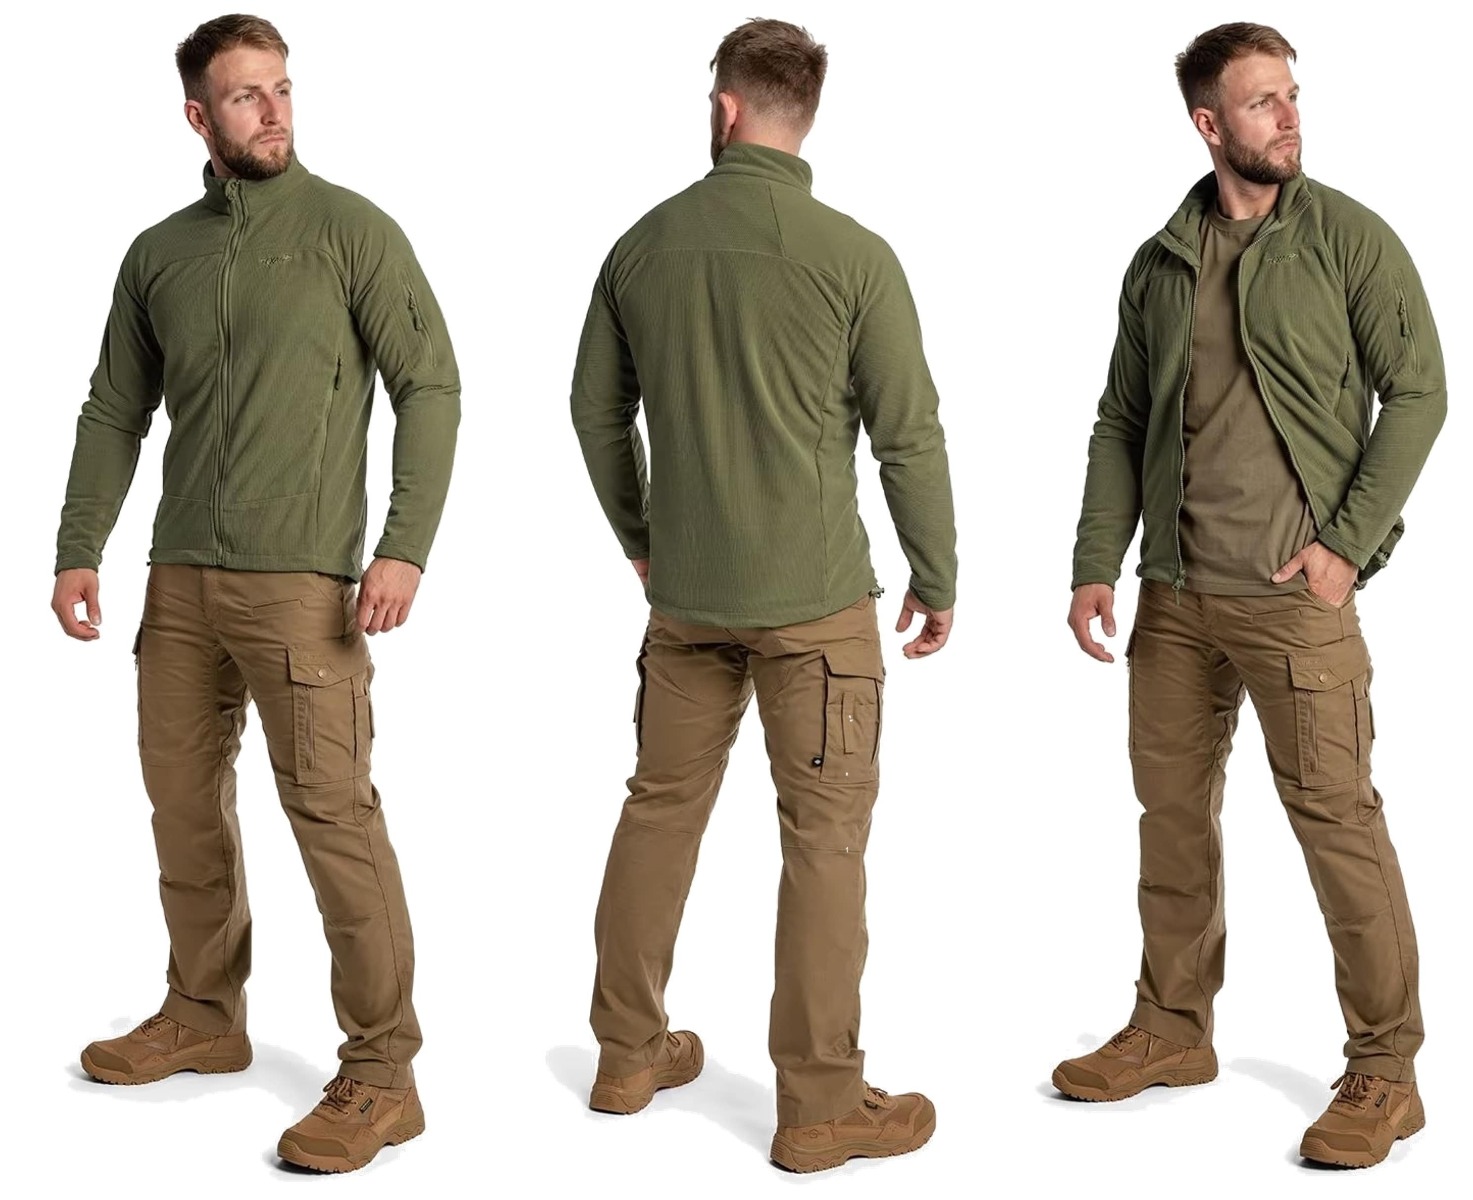 Odkrijte vrhunsko flis jakno Texar Conger Oliv - idealno taktično oblačilo za zaščito in udobje v vseh vremenskih razmerah. Vzdržljiva, funkcionalna in kakovostna jakna za pripadnike varnostnih služb, pohodnike in rekreativce. Zagotovite si svoj primerek že danes!